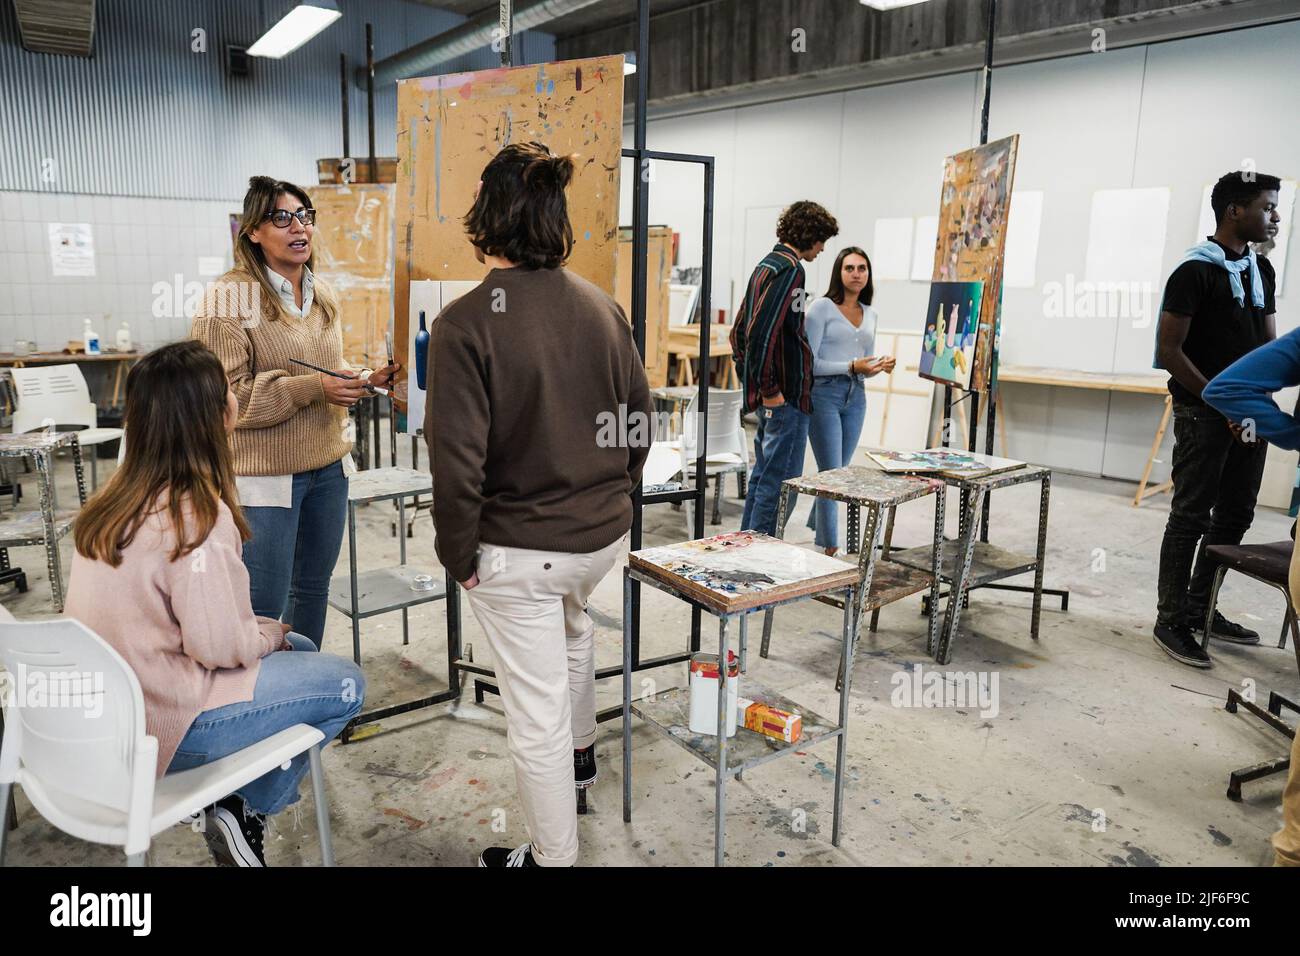 Reifer Lehrer, der während des Malens in der Schule mit Kunststudenten arbeitet - Fokus auf das Gesicht der Frau Stockfoto